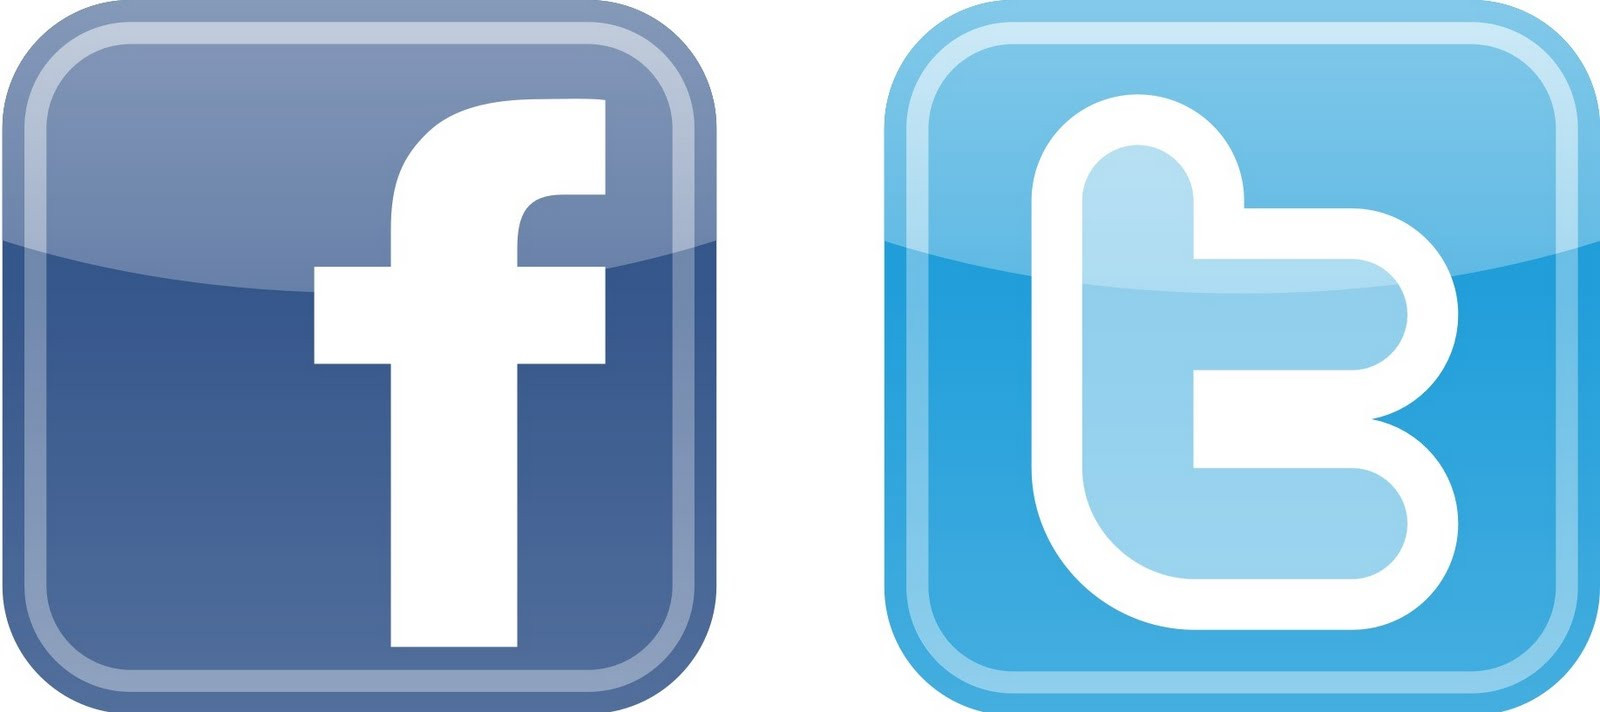 Ευκολότερη η ανταλλαγή μηνυμάτων σε Facebook και Twitter